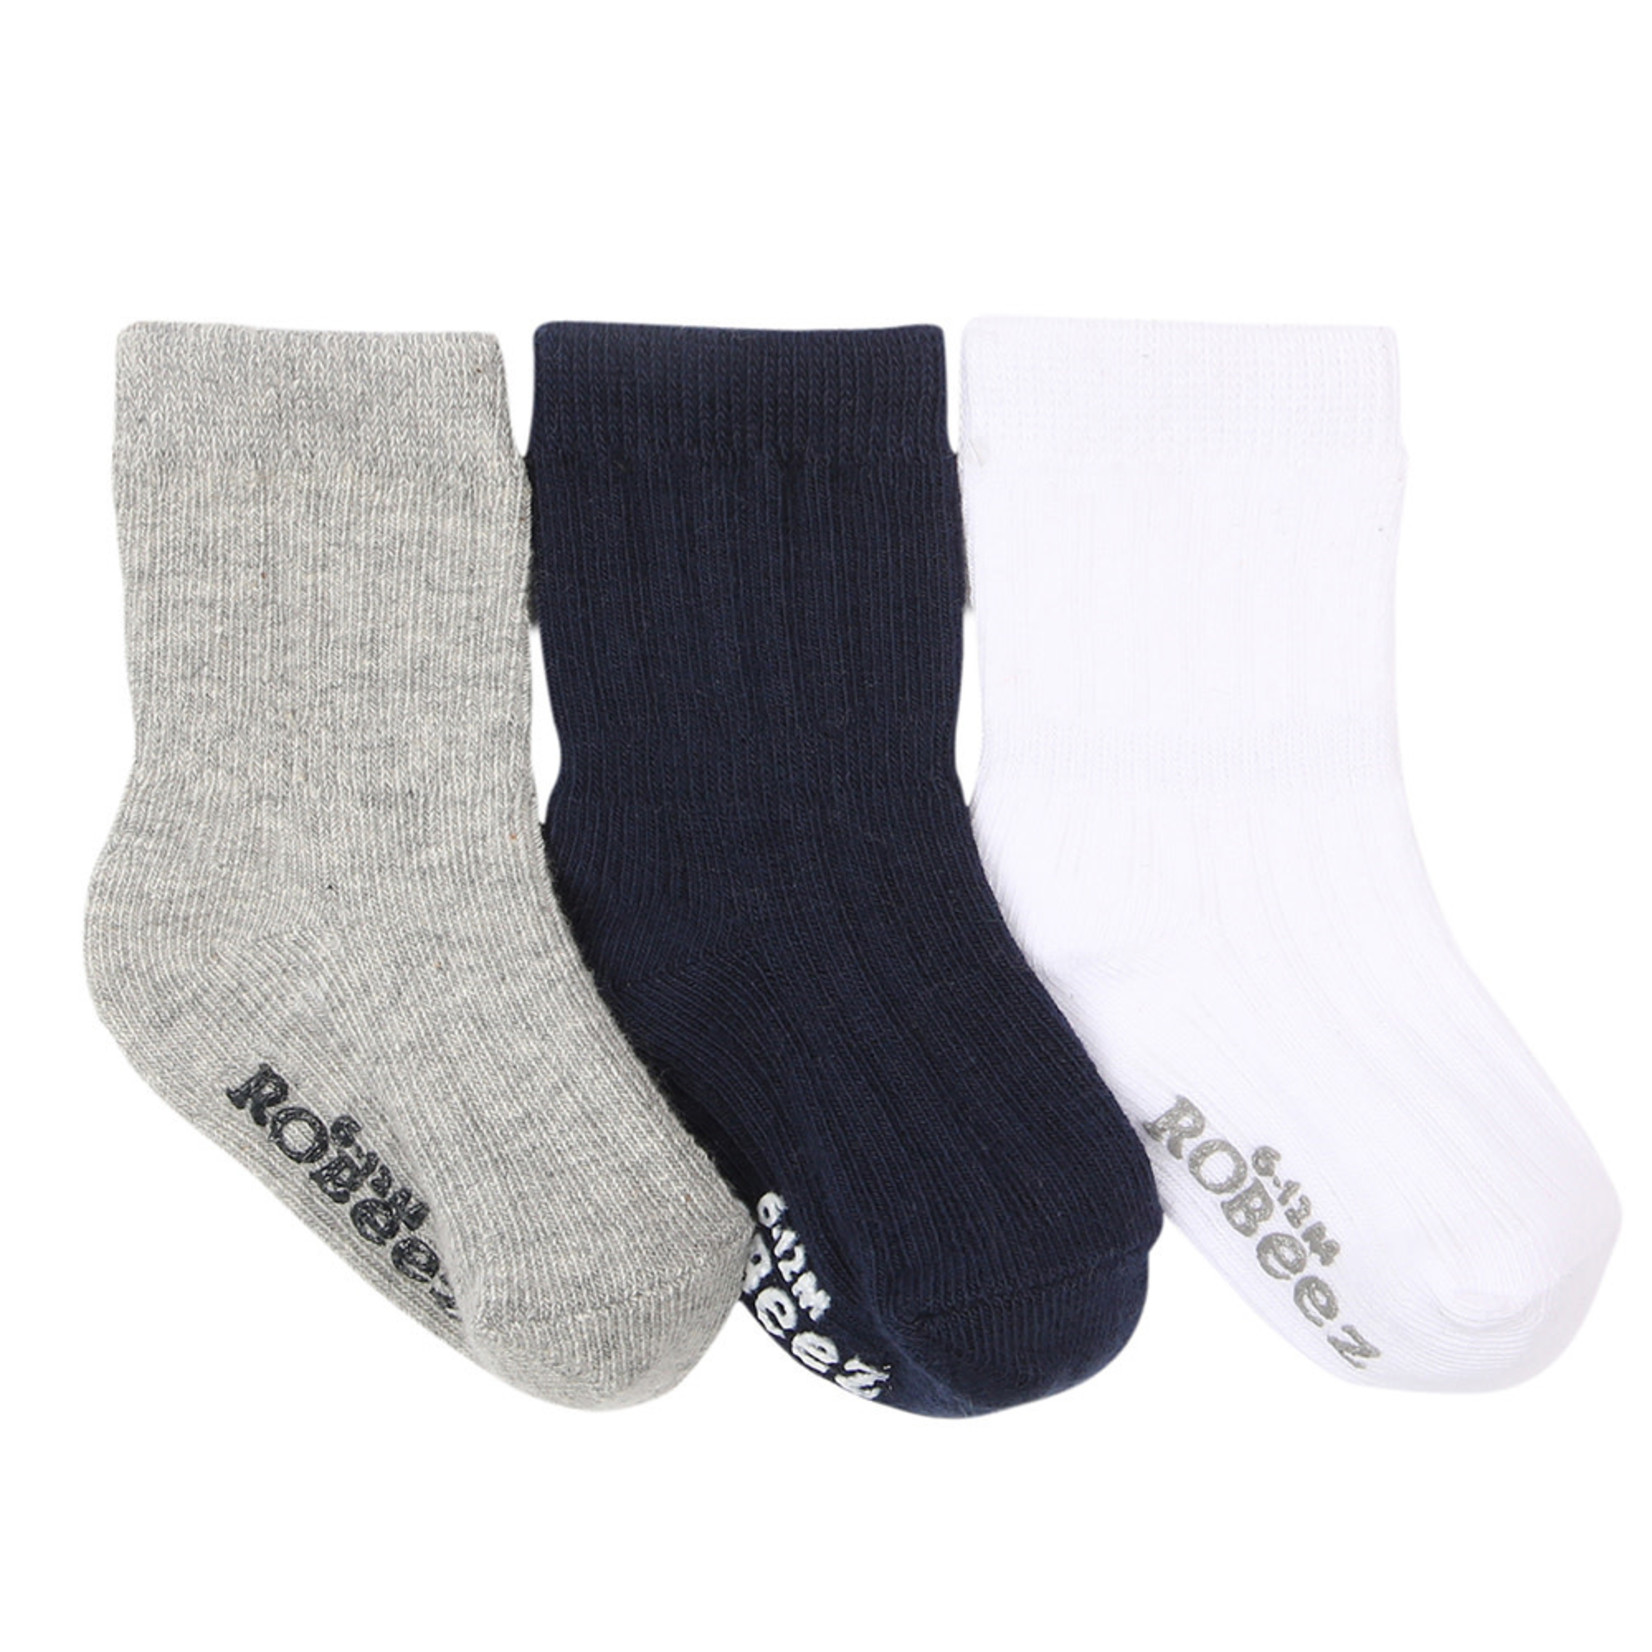 Robeez 3 Pk Socks, Basics Navy/Grey/White